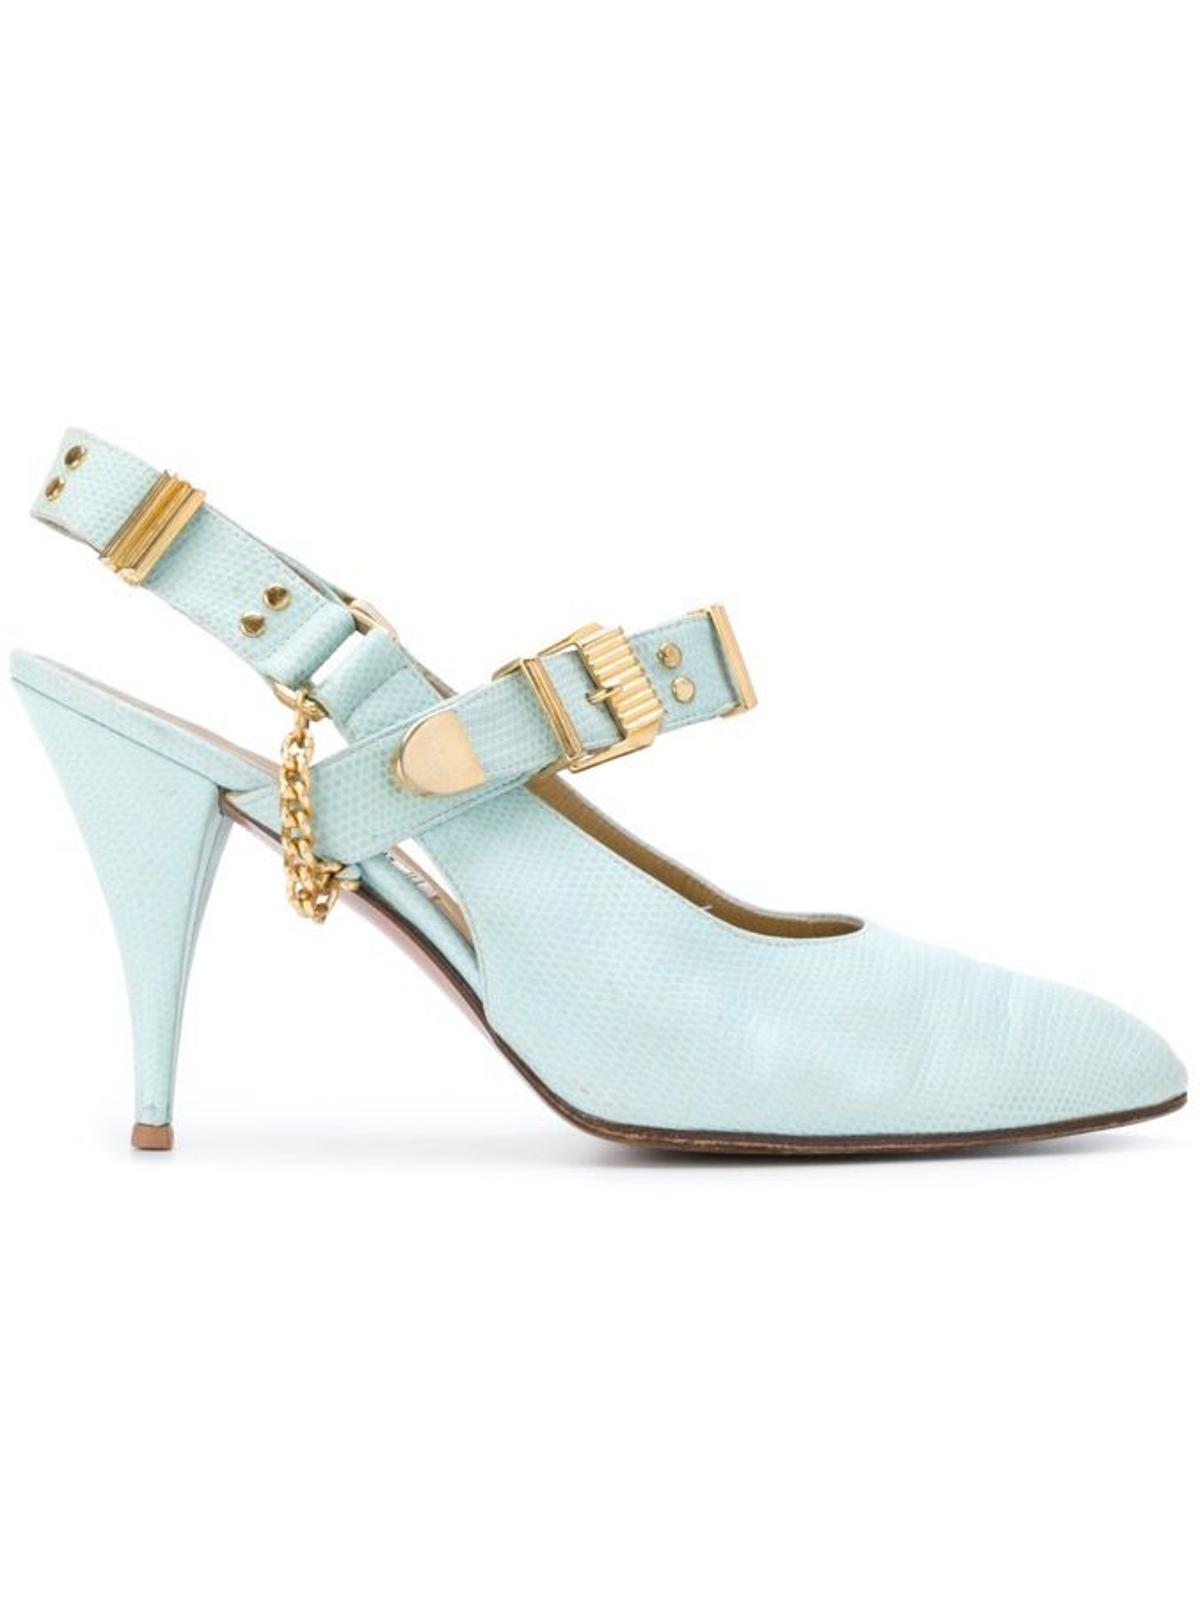 William Vintage Gianni Versace para Farfetch, zapato con hebillas